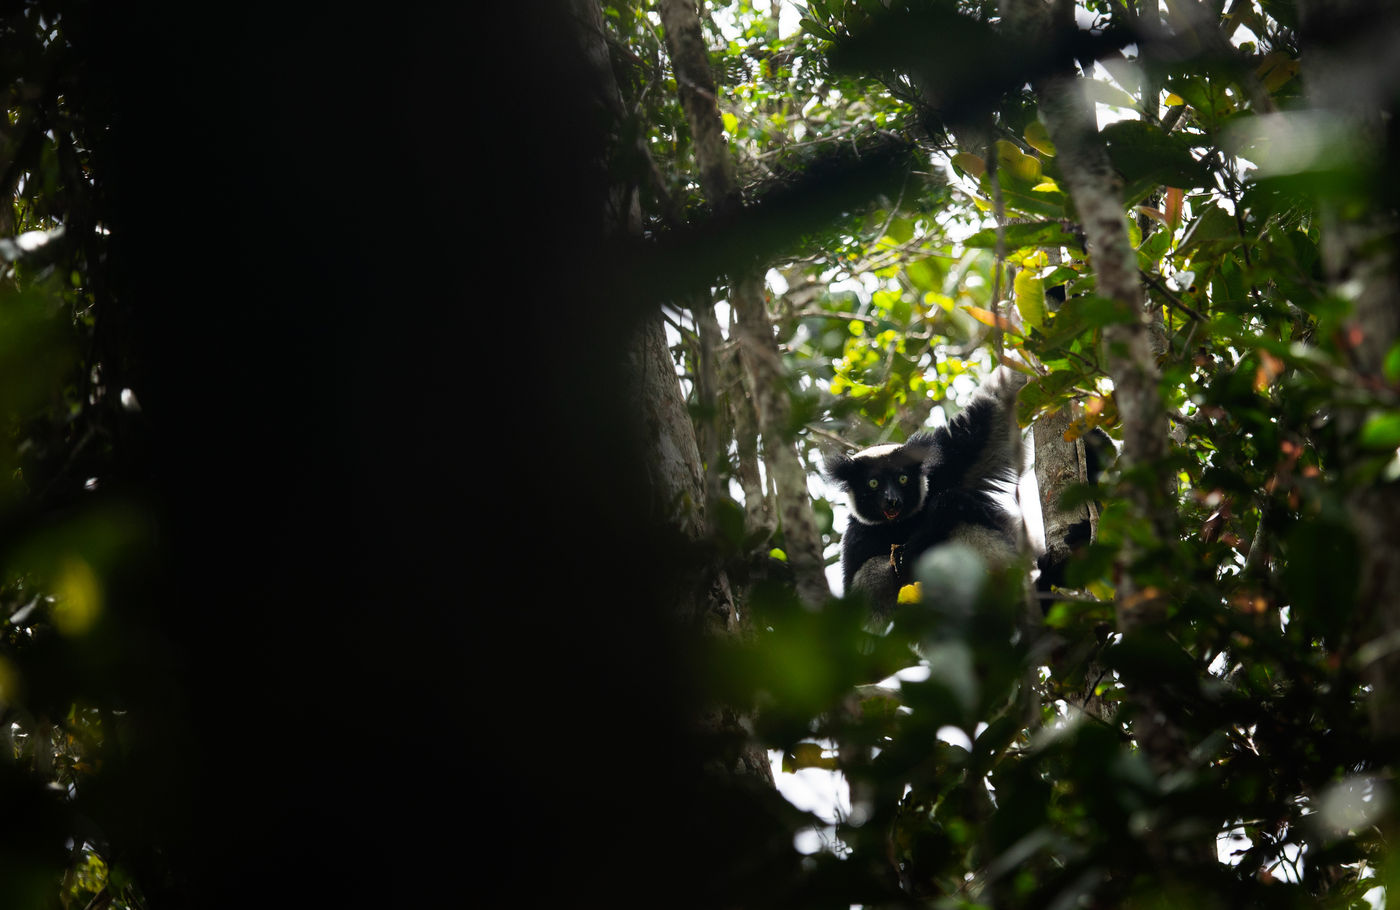 Indri, de grootste van de lemurs en tevens bedreigd. © Samuel De Rycke